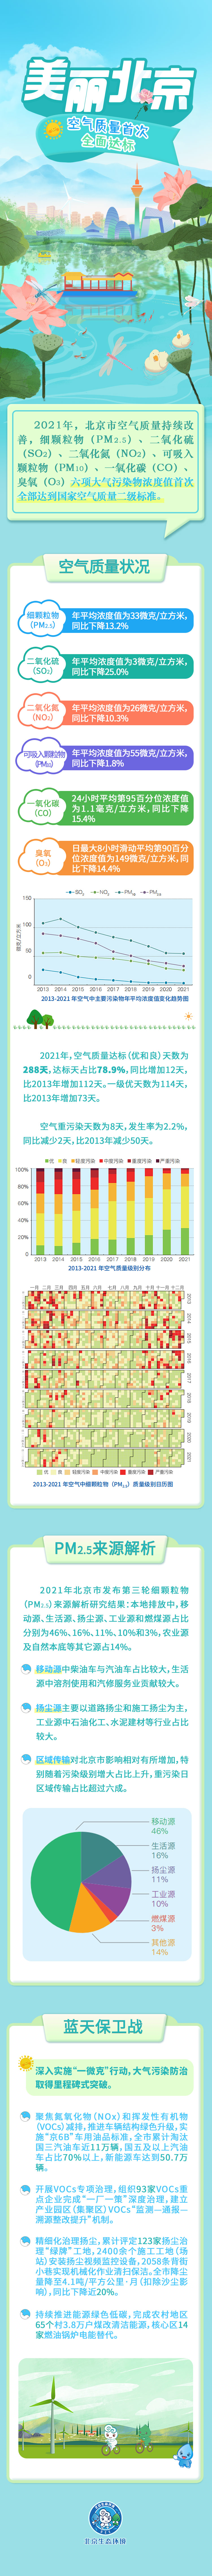 美丽北京|《2021年北京市生态环境状况公报》发布空气质量首次全面达标